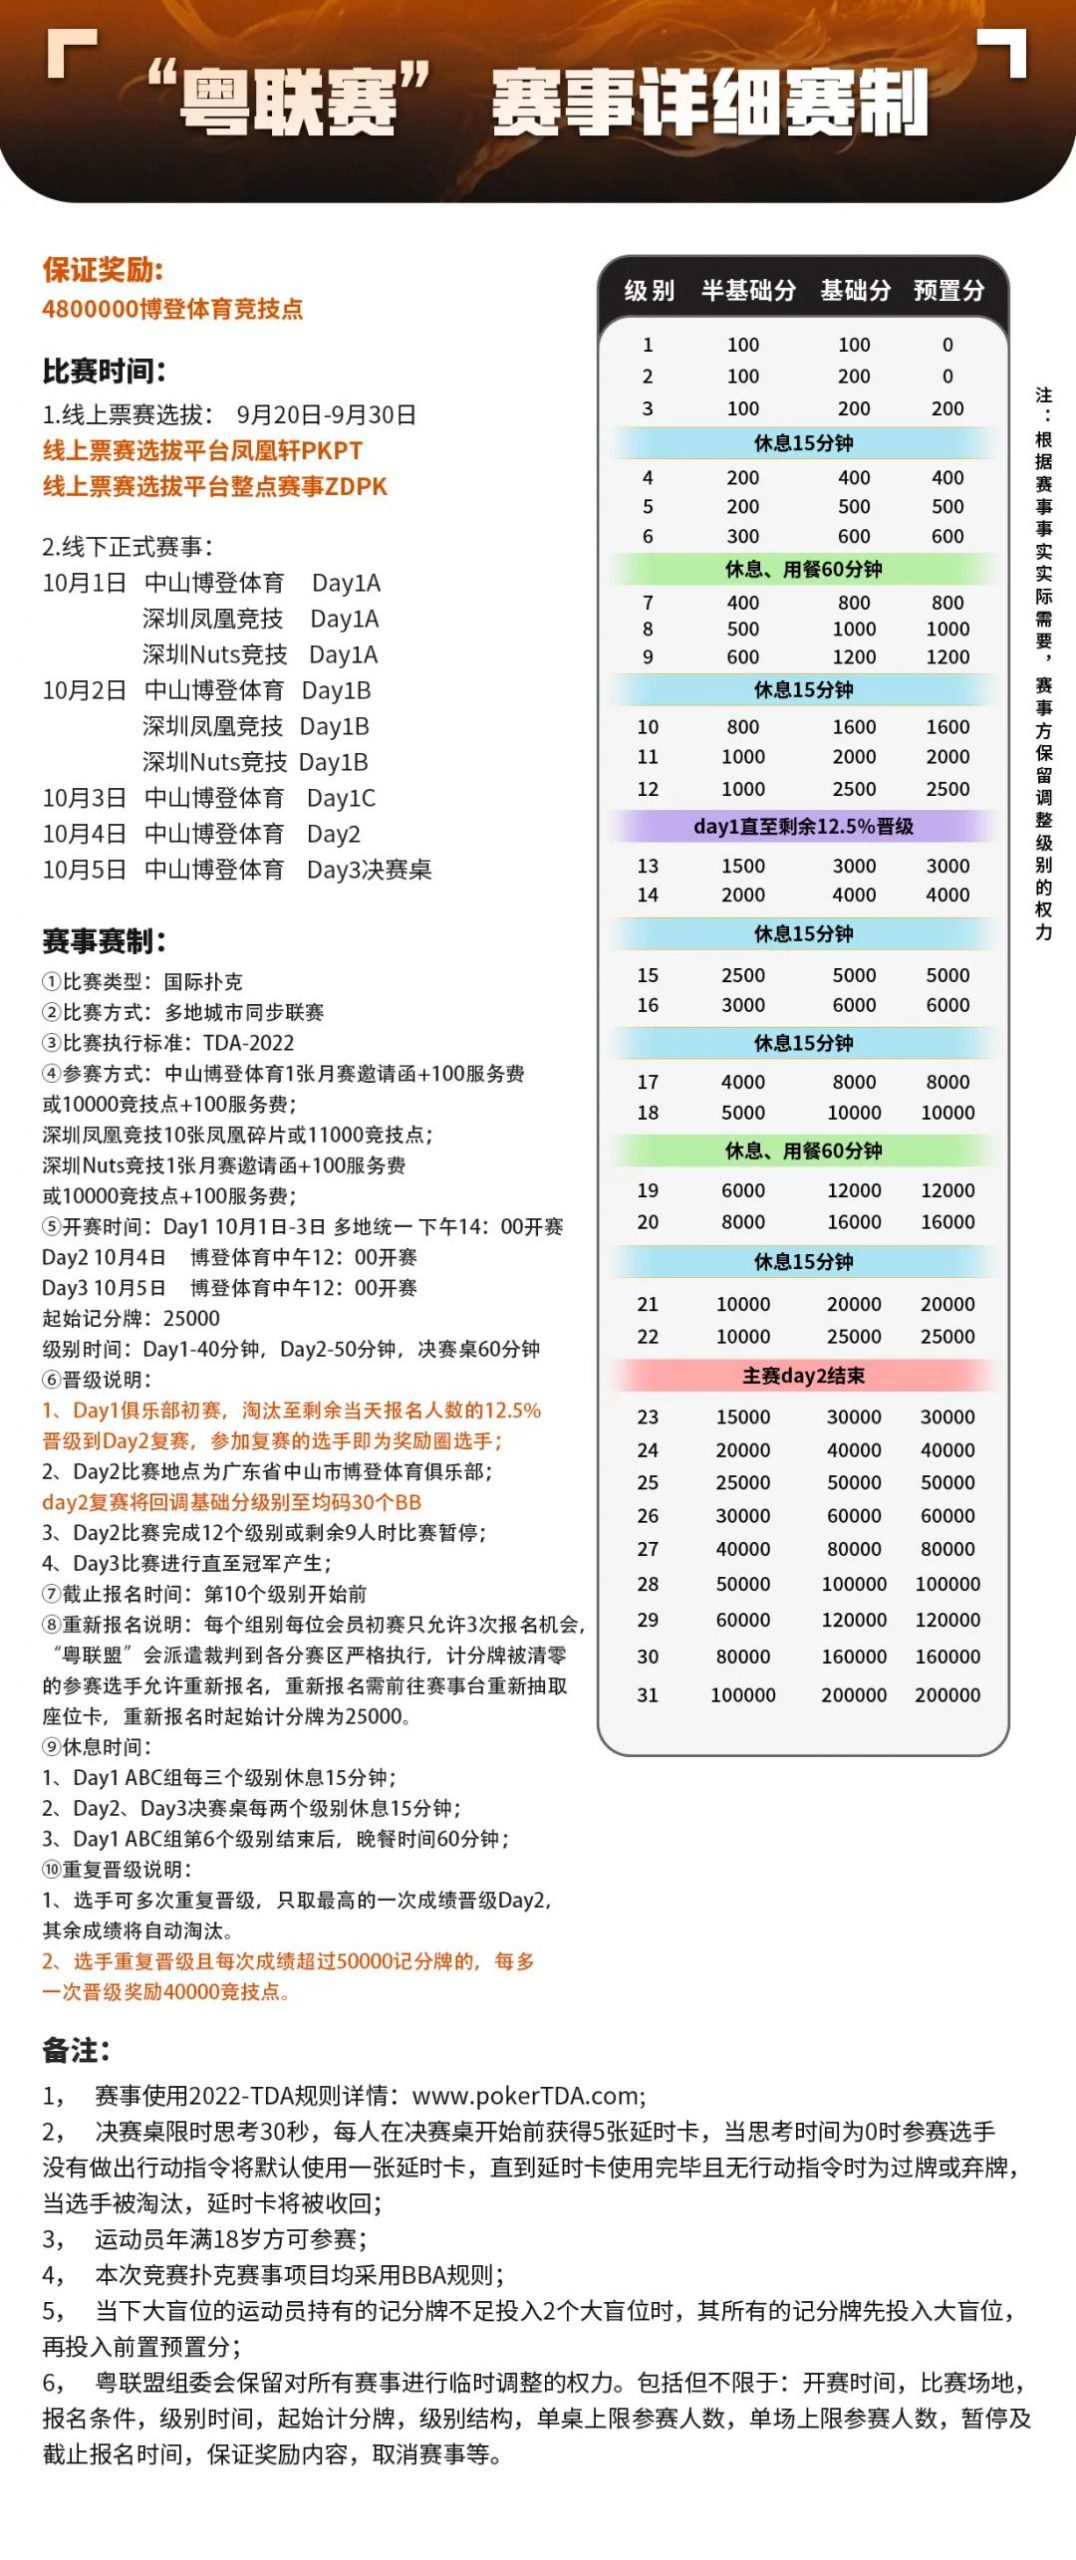 【WPT扑克】赛事信息 | 第三届博登杯定档10月23日在广东中山，详细赛程发布